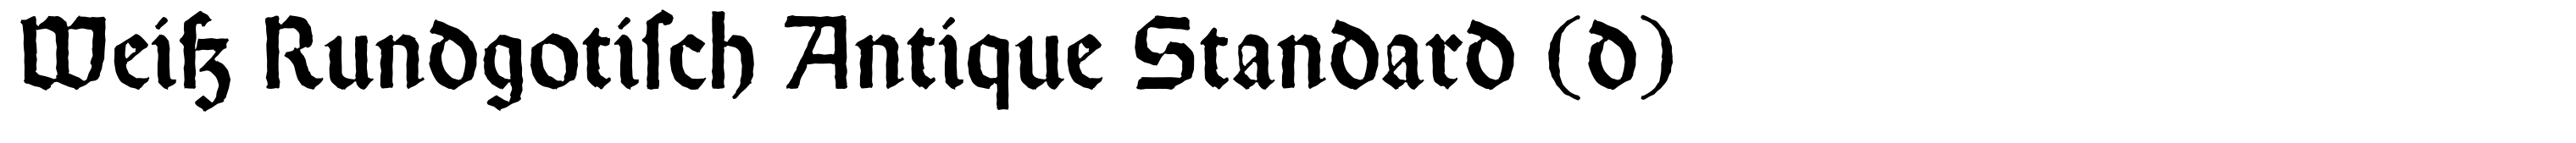 Weiß Rundgotisch Antique Standard (d)